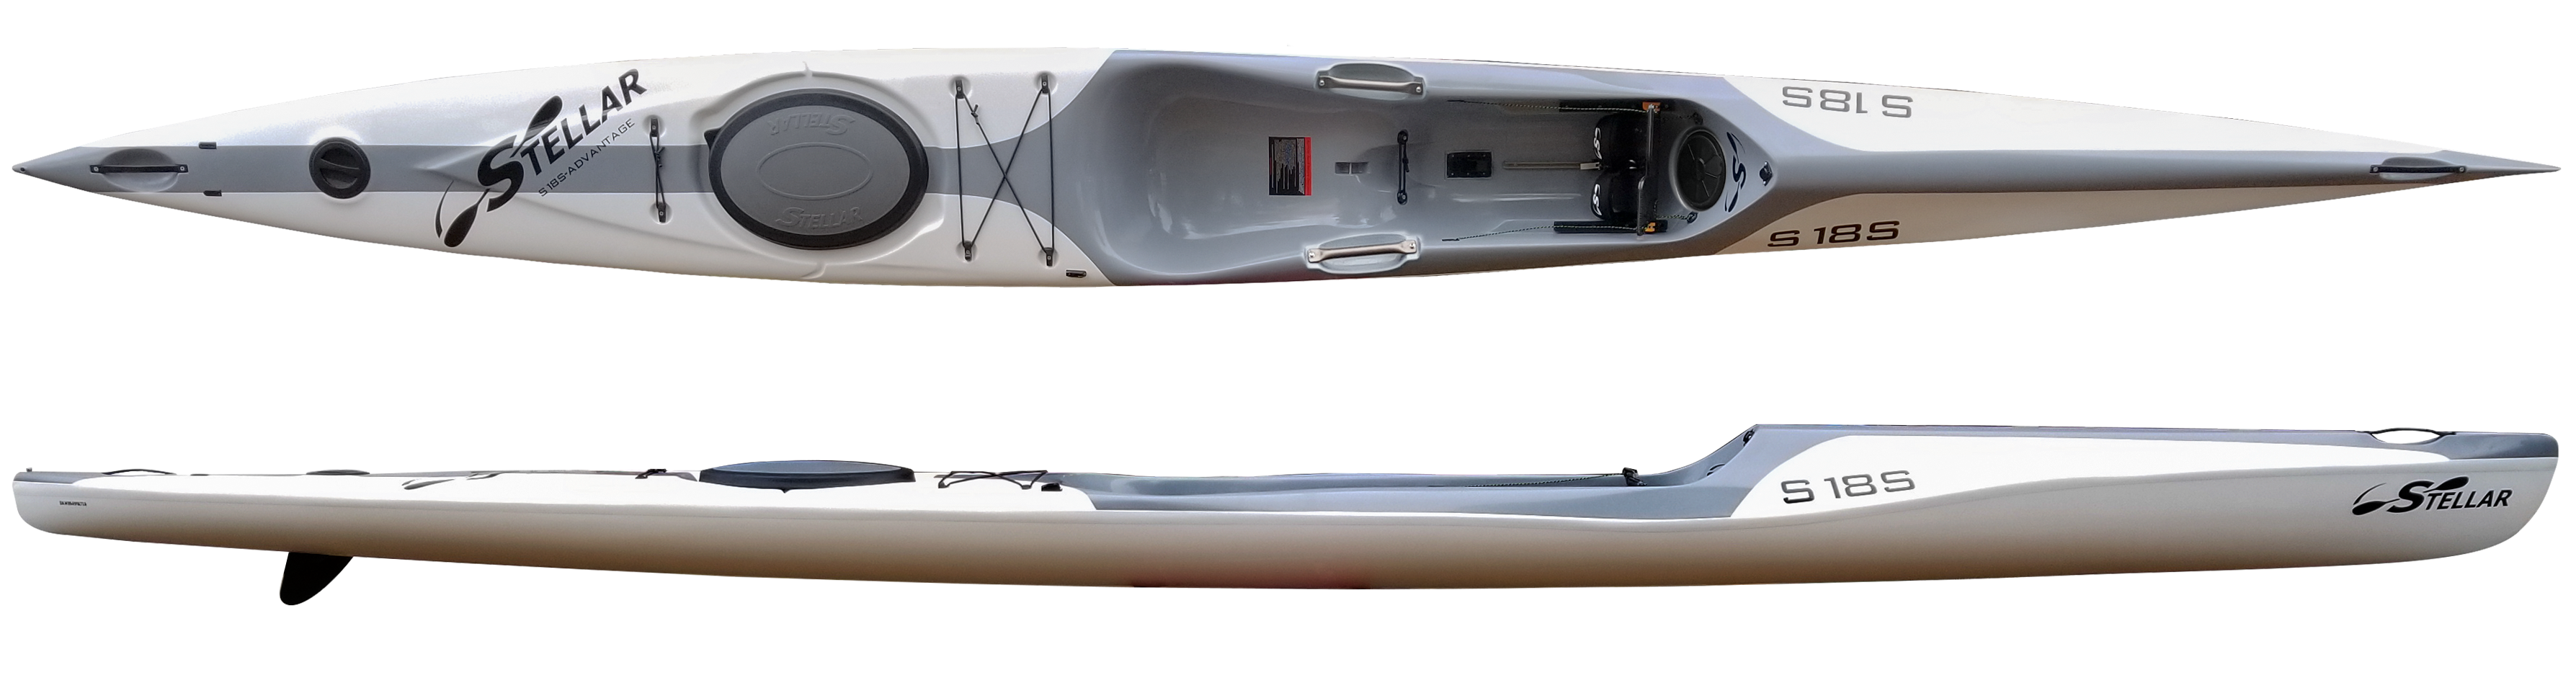 Kayaks: S18S G2 by Stellar Kayaks - Image 4717